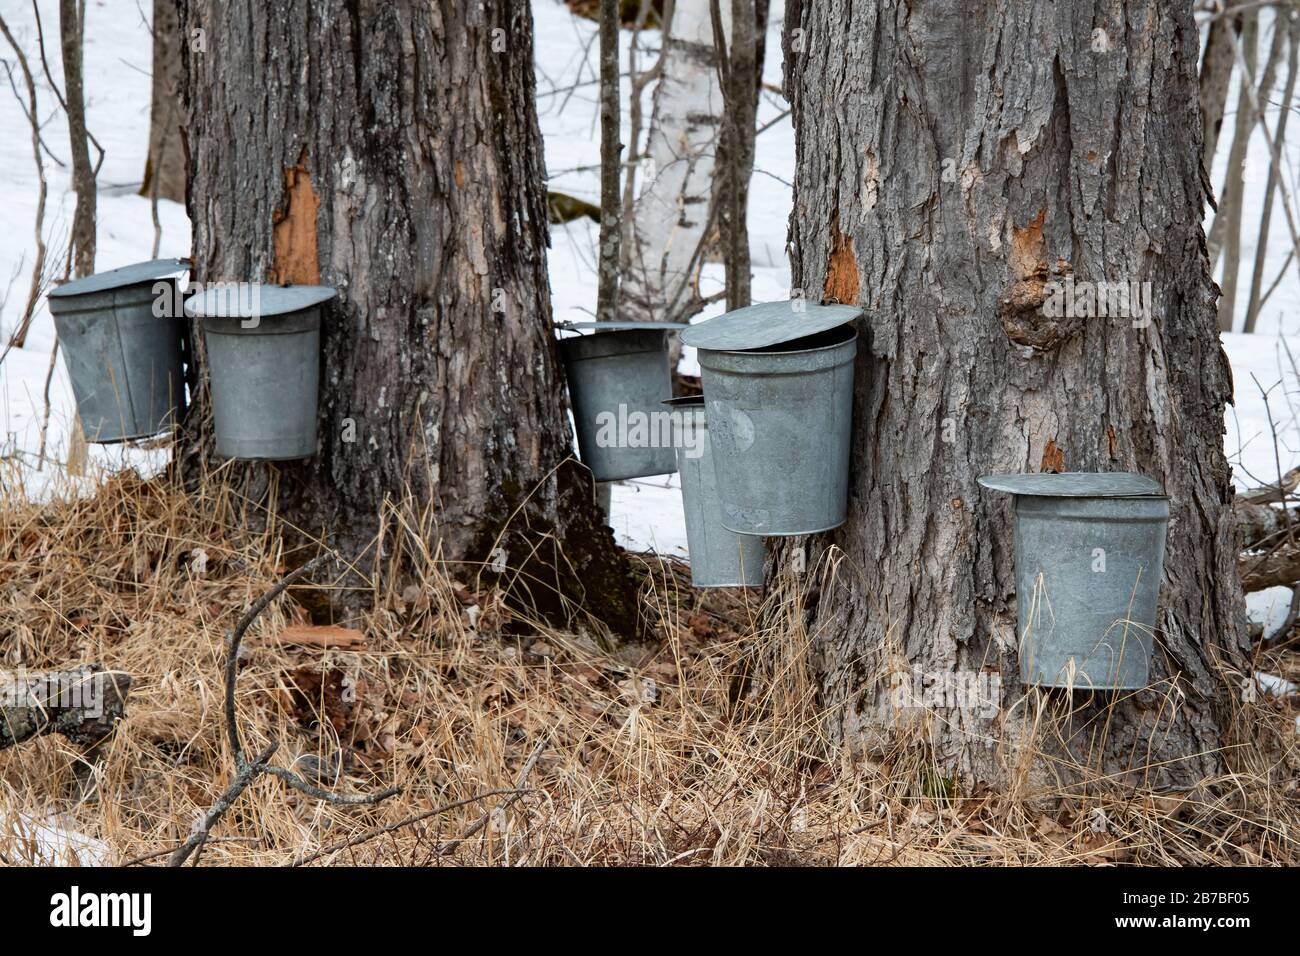 Ahorn-sap-Sammelbecher, die an einem großen alten Ahorn-Baum hängen, um sap für die Herstellung von Ahorn-Sirup in den Adirondack Mountains NY USA im späten Winter zu sammeln Stockfoto